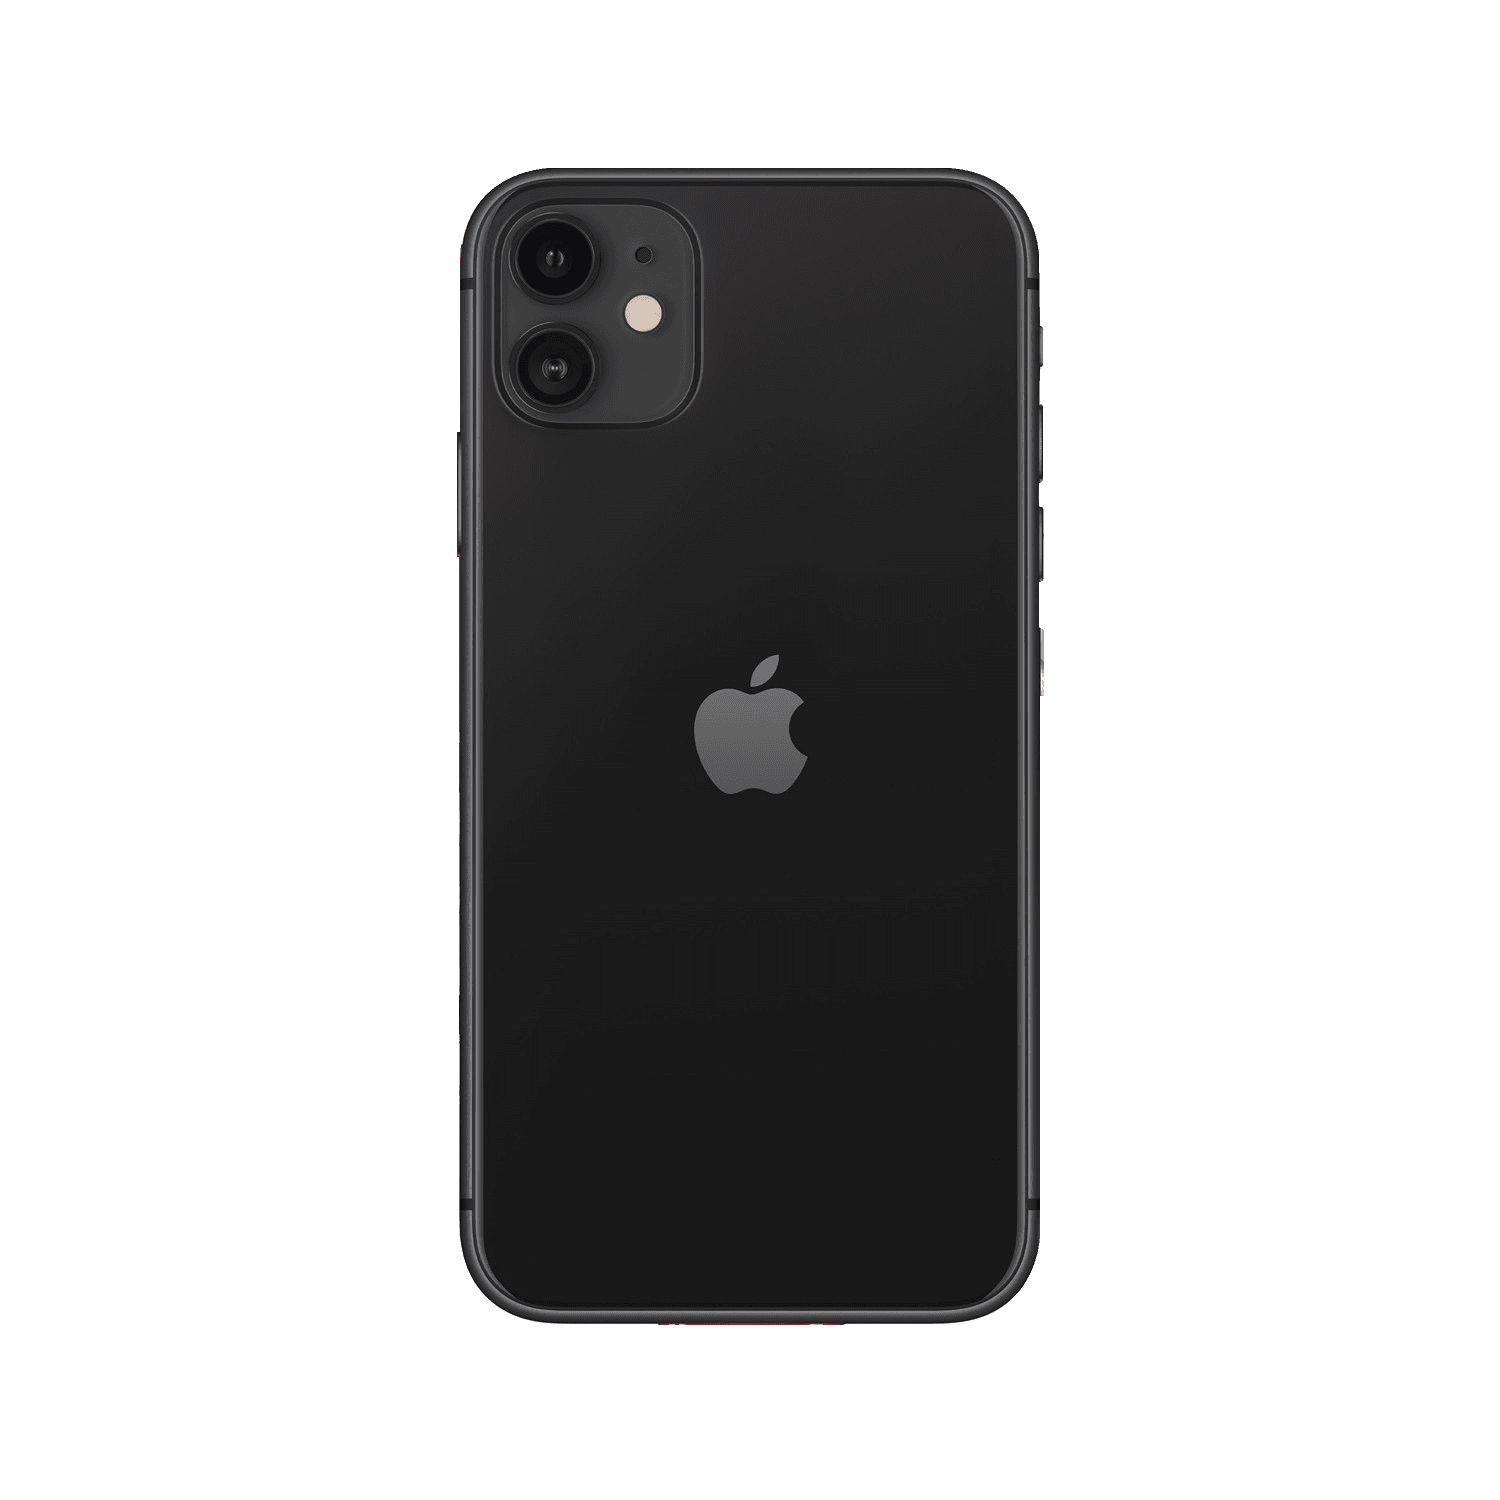 Айфон 11 цена в москве 128 оригинал. Iphone 11 128gb Black. Apple iphone 11 256 ГБ черный. Айфон 11 128 ГБ черный. Apple iphone 11 128 ГБ черный / айфон 11.